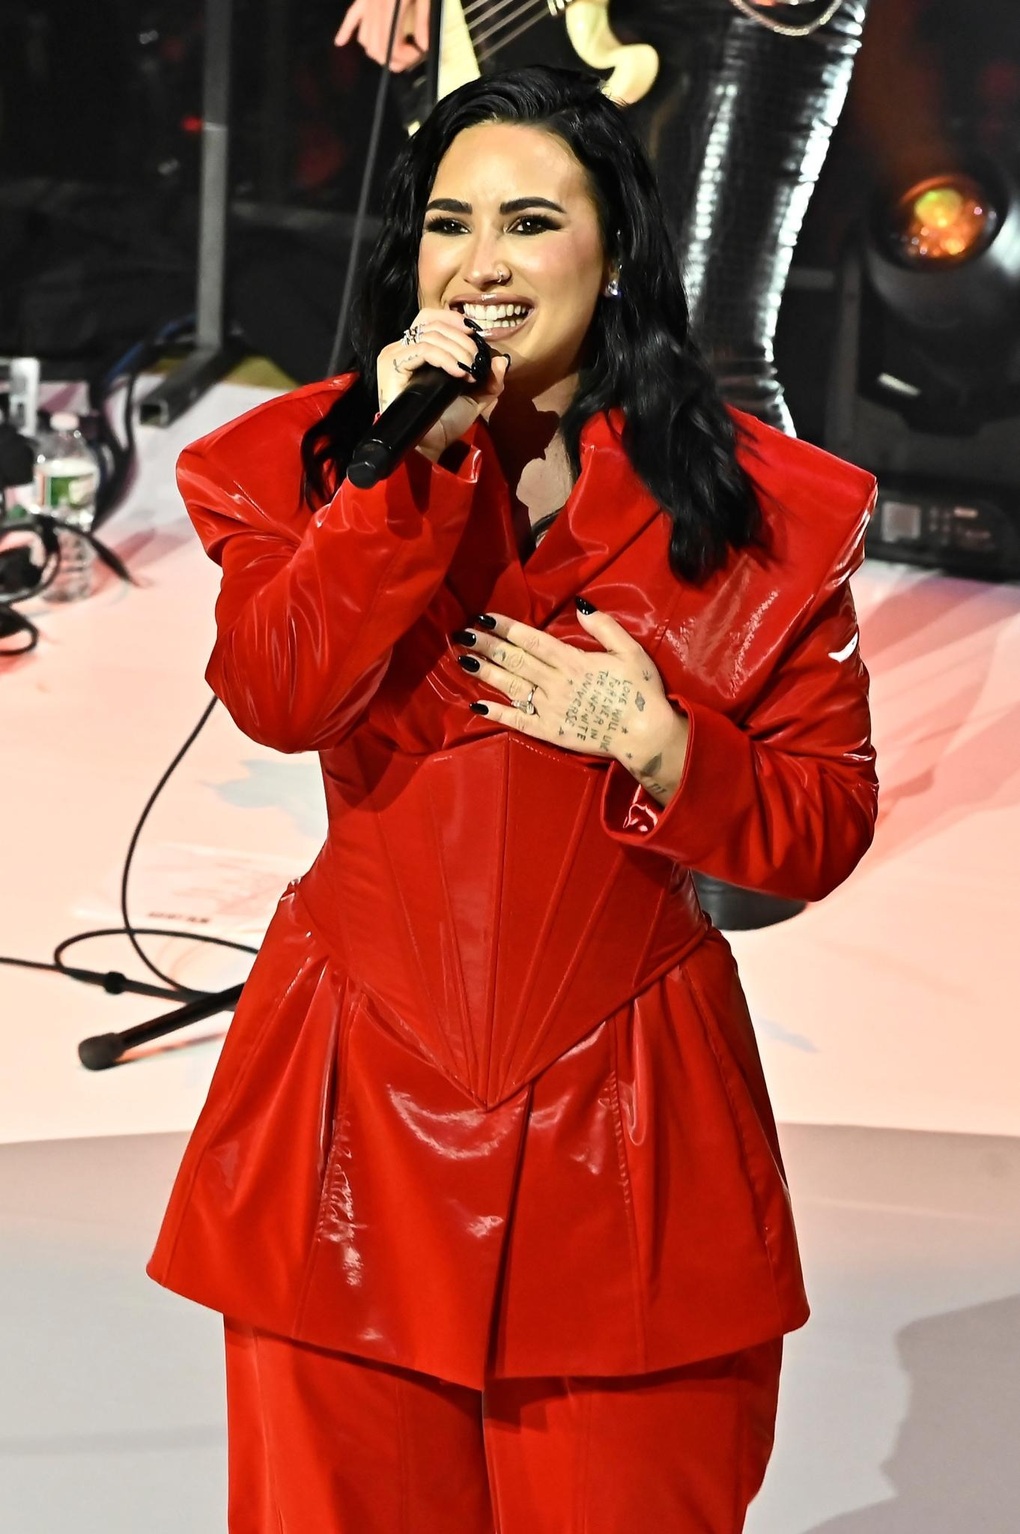 Nữ ca sĩ bị phản ứng vì hát ca khúc Đau tim tại sự kiện của Hội Tim mạch - 2